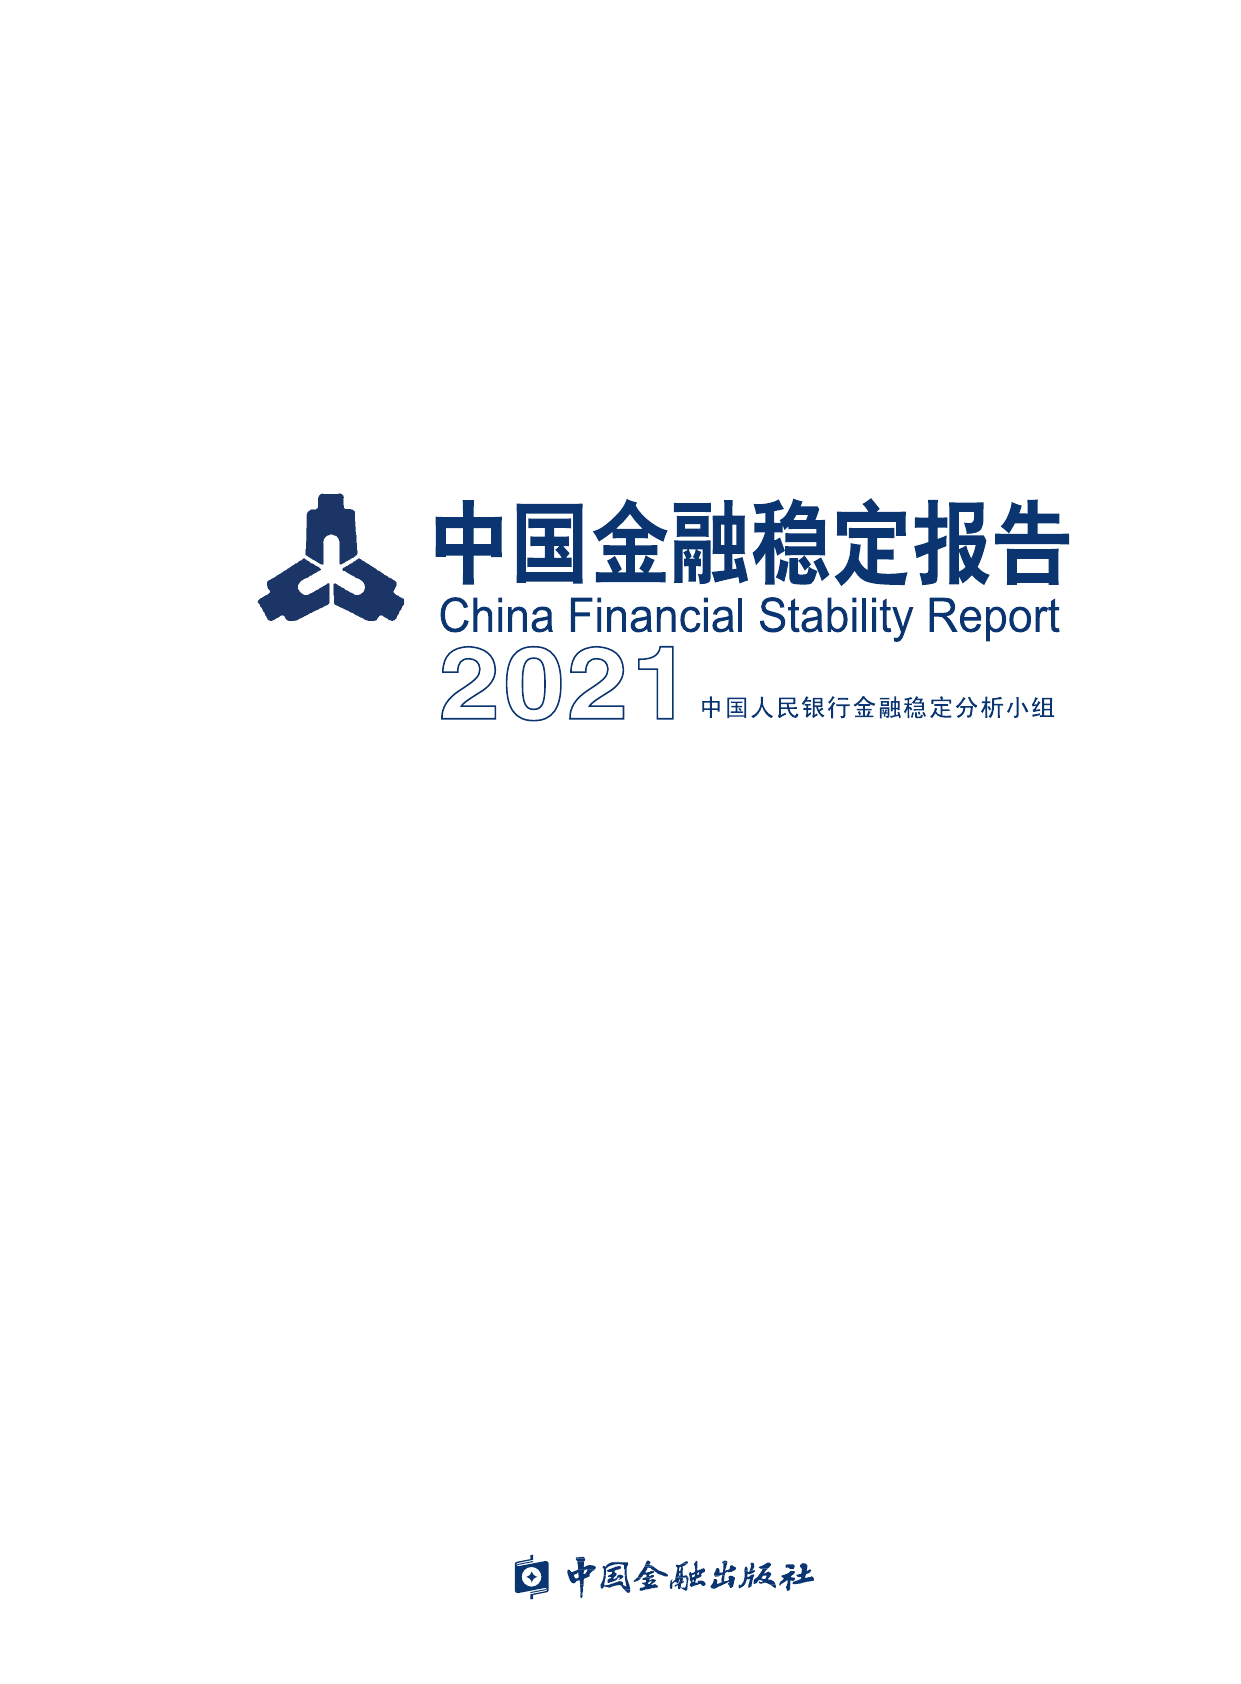 中国金融稳定报告(2021)-中国金融出版社-2021-132页